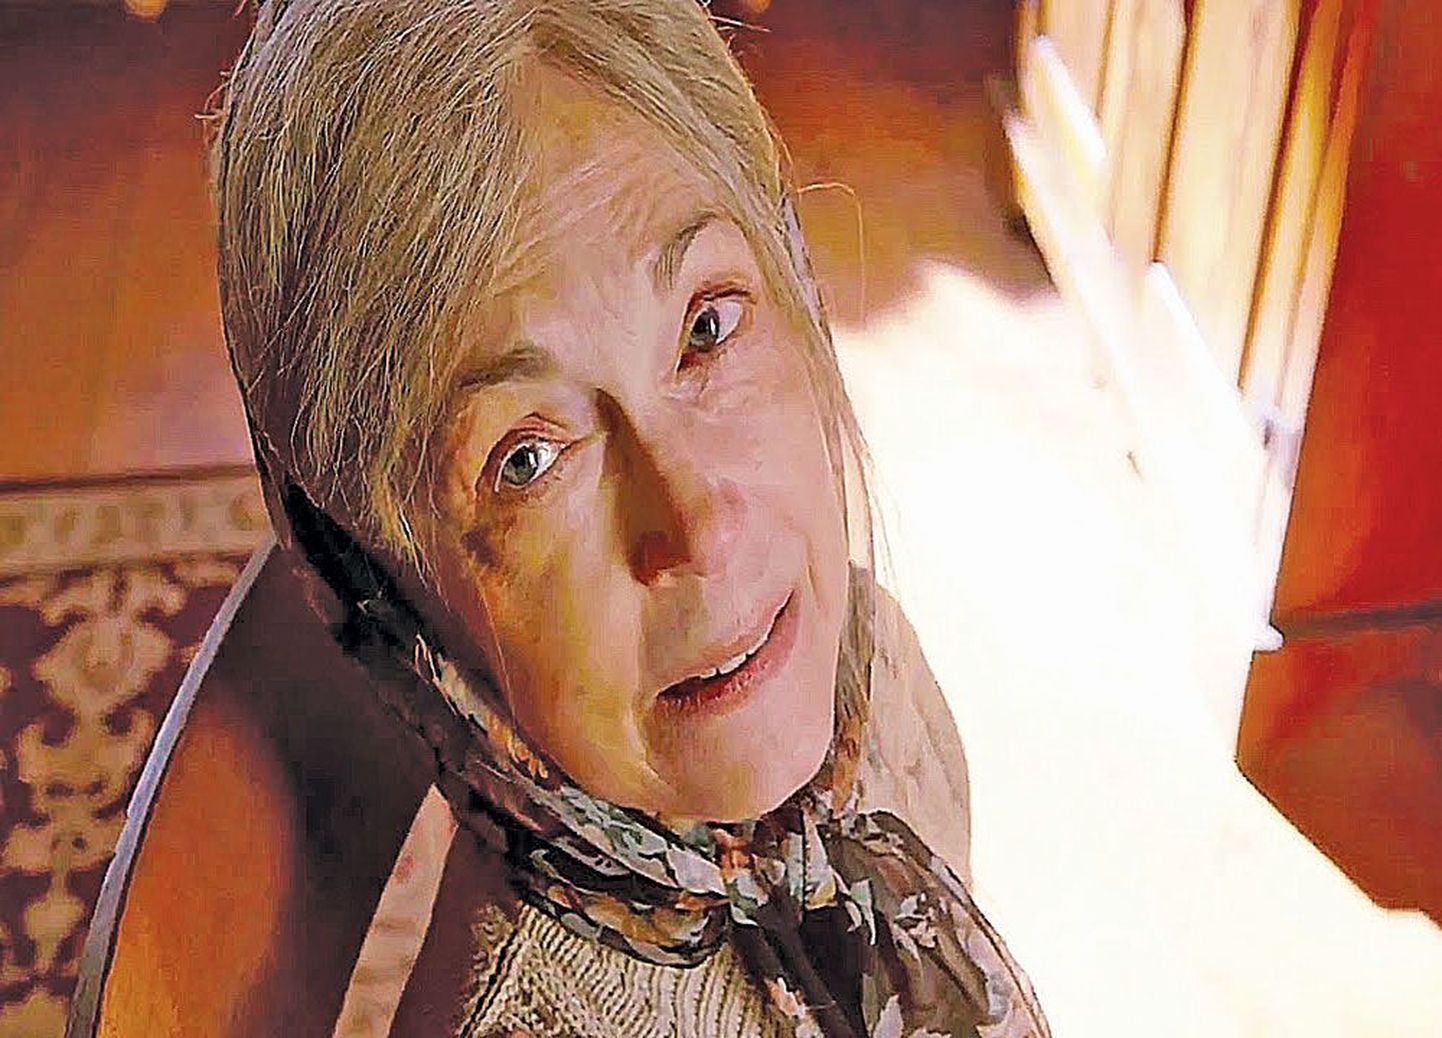 Бабушка (Диана Даннаган) выглядит временами опасной сумасшедшей – но не может же все быть так просто. Или может?